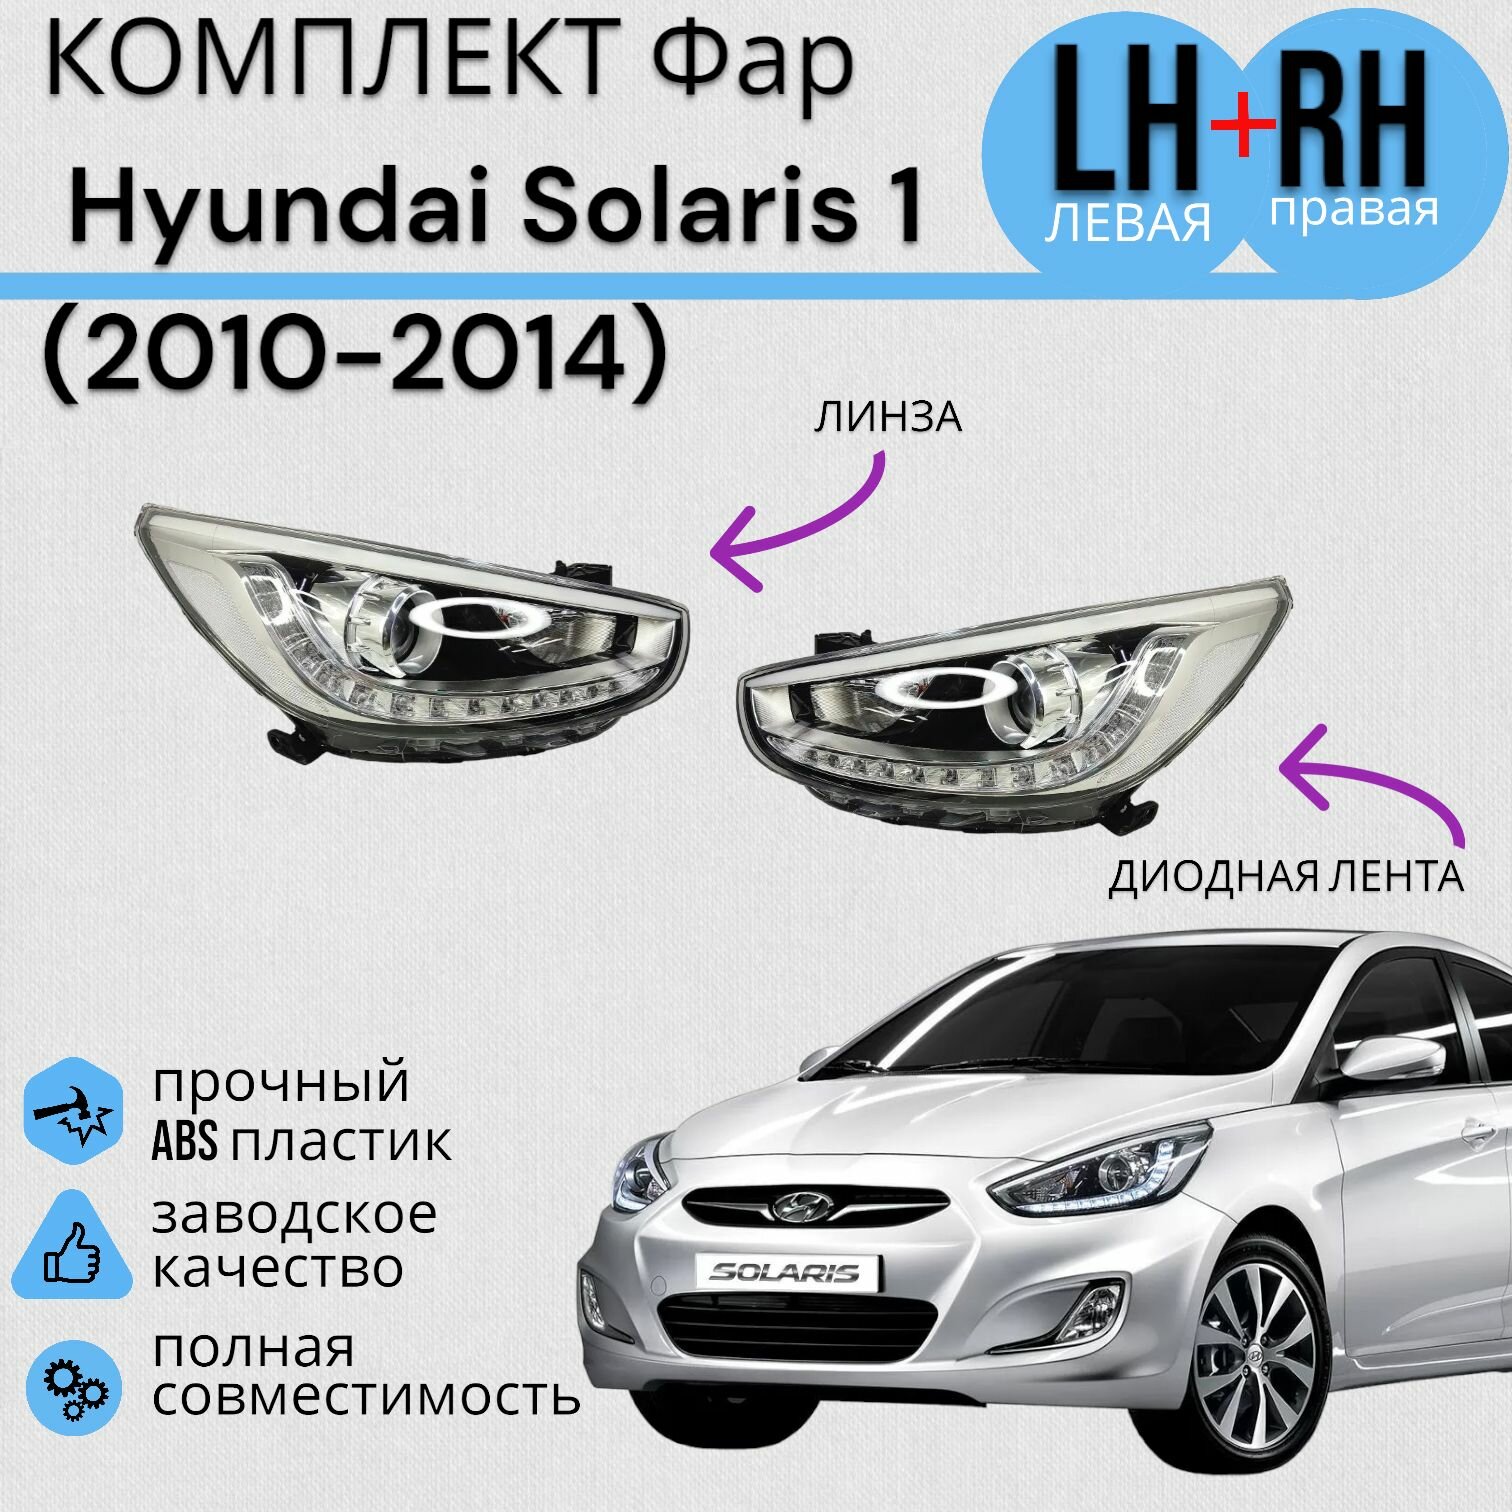 Комплект ФАР Hyundai Solaris 1 Хендай Солярис (2010-2014) линза+Диодная лента левая+правая